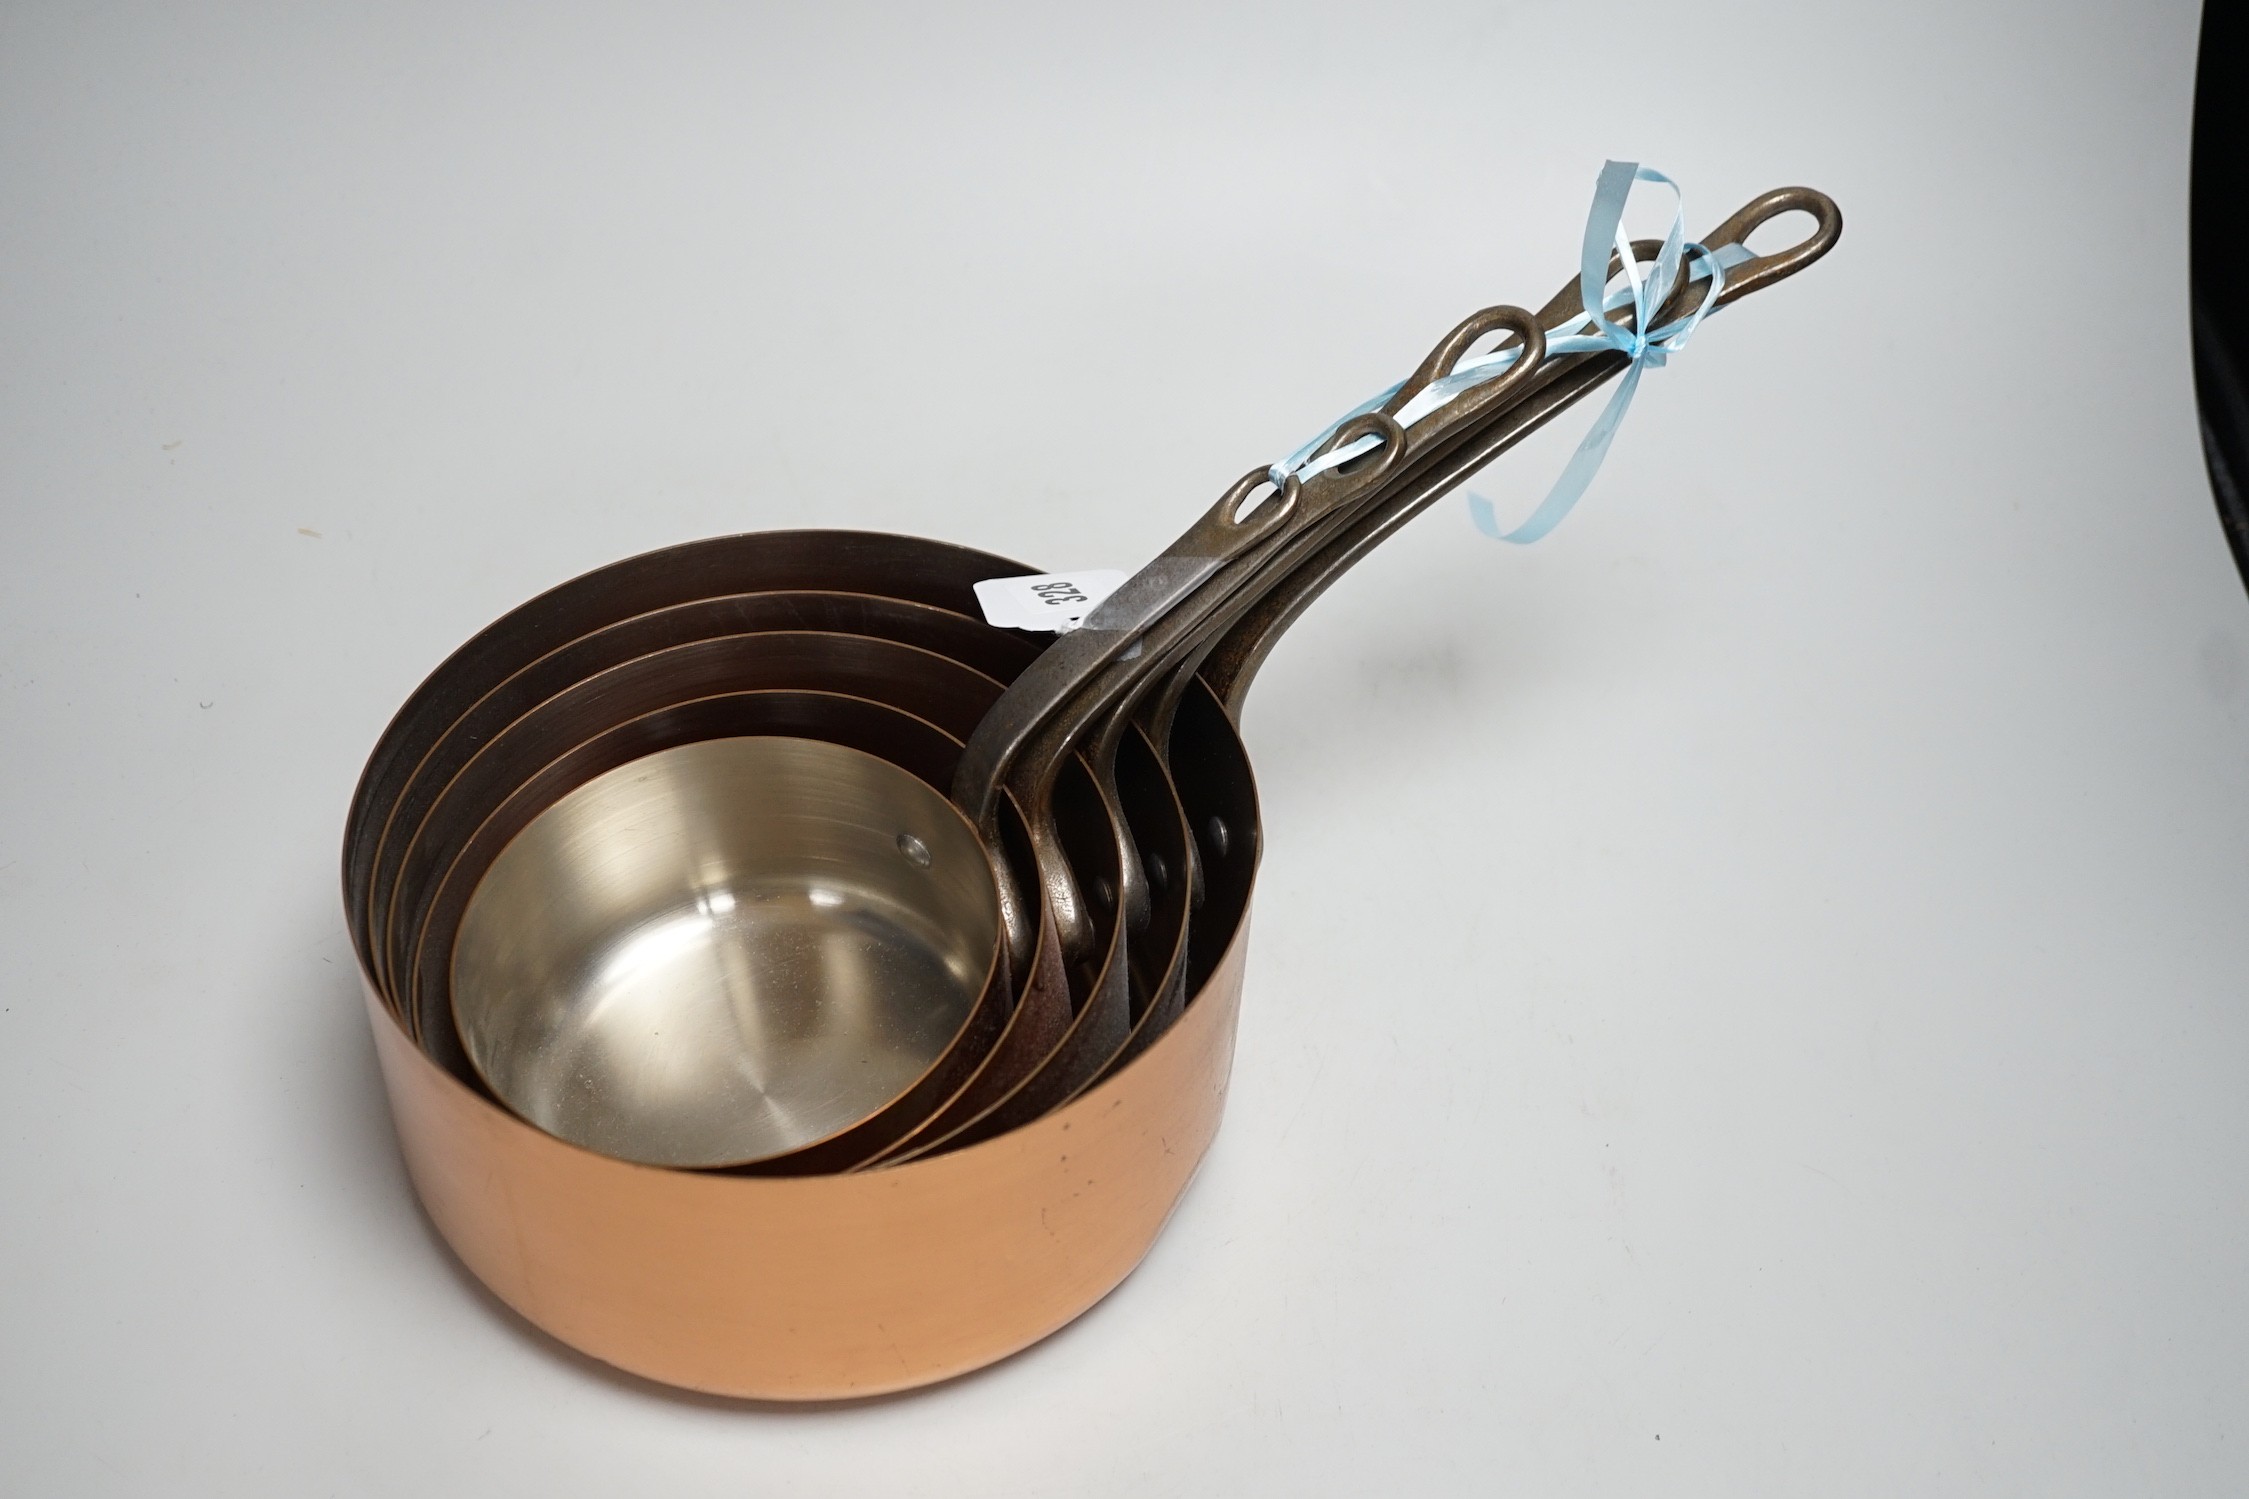 A set of French graduated copper saucepans, batterie de cuisine - Image 2 of 3